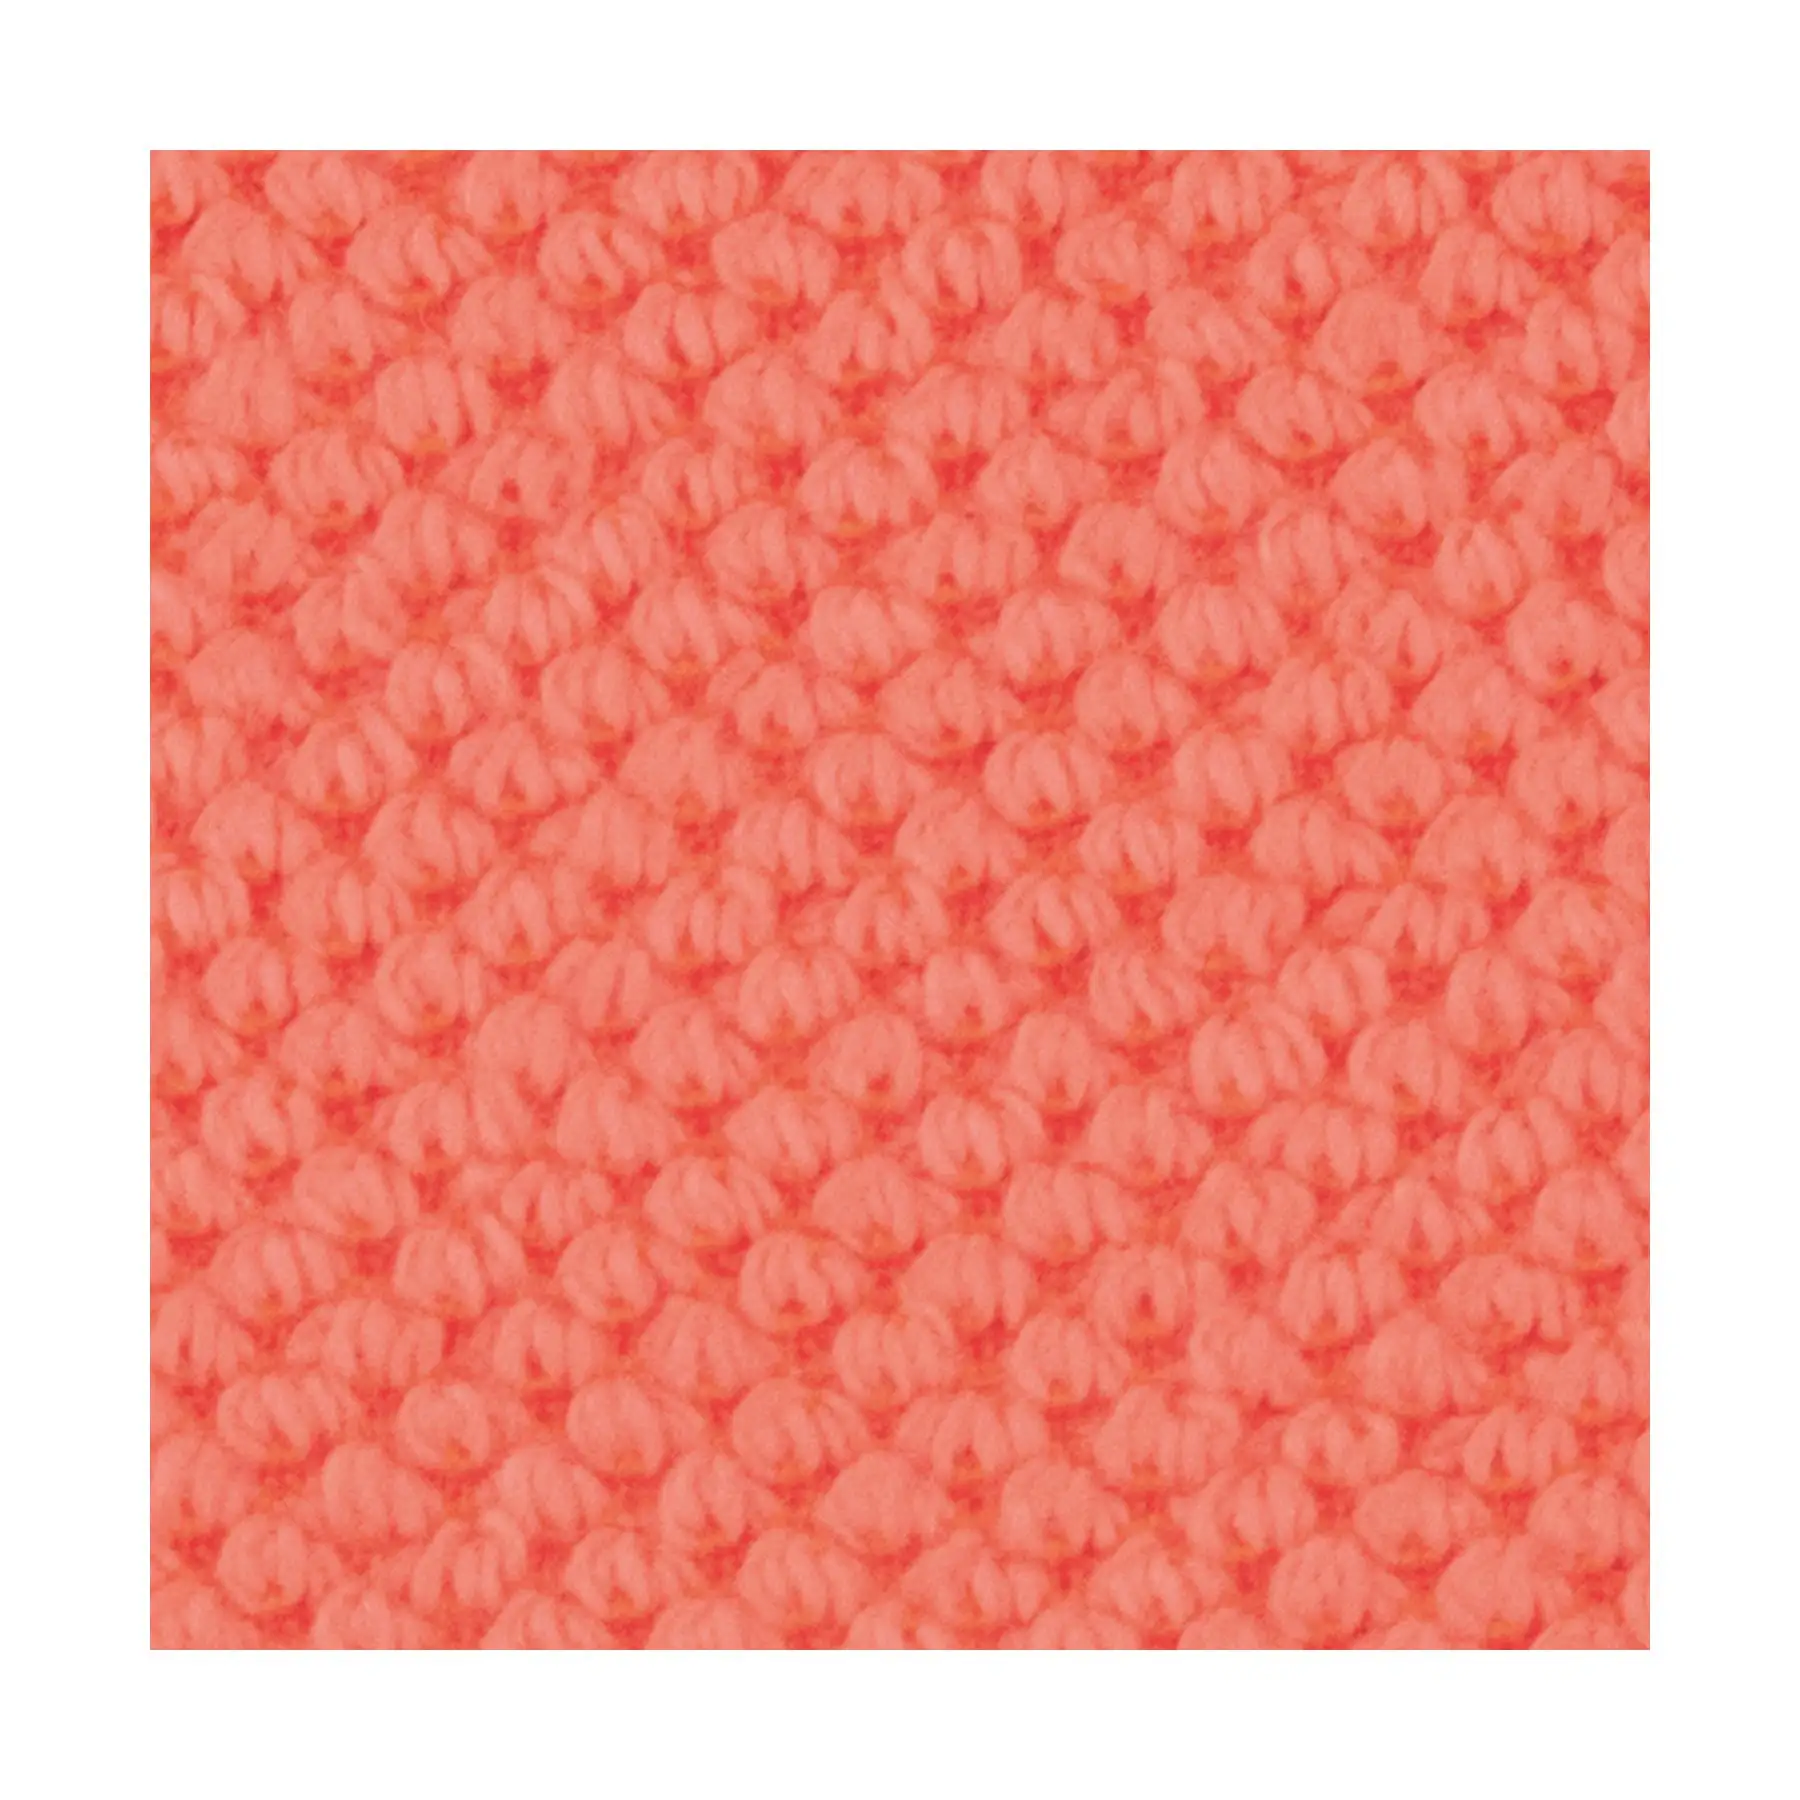 Felpa diagonale In cotone di alta qualità, realizzata In Italia con Texture unica, perfetta per l'abbigliamento di tutti i giorni con uno stile migliorato